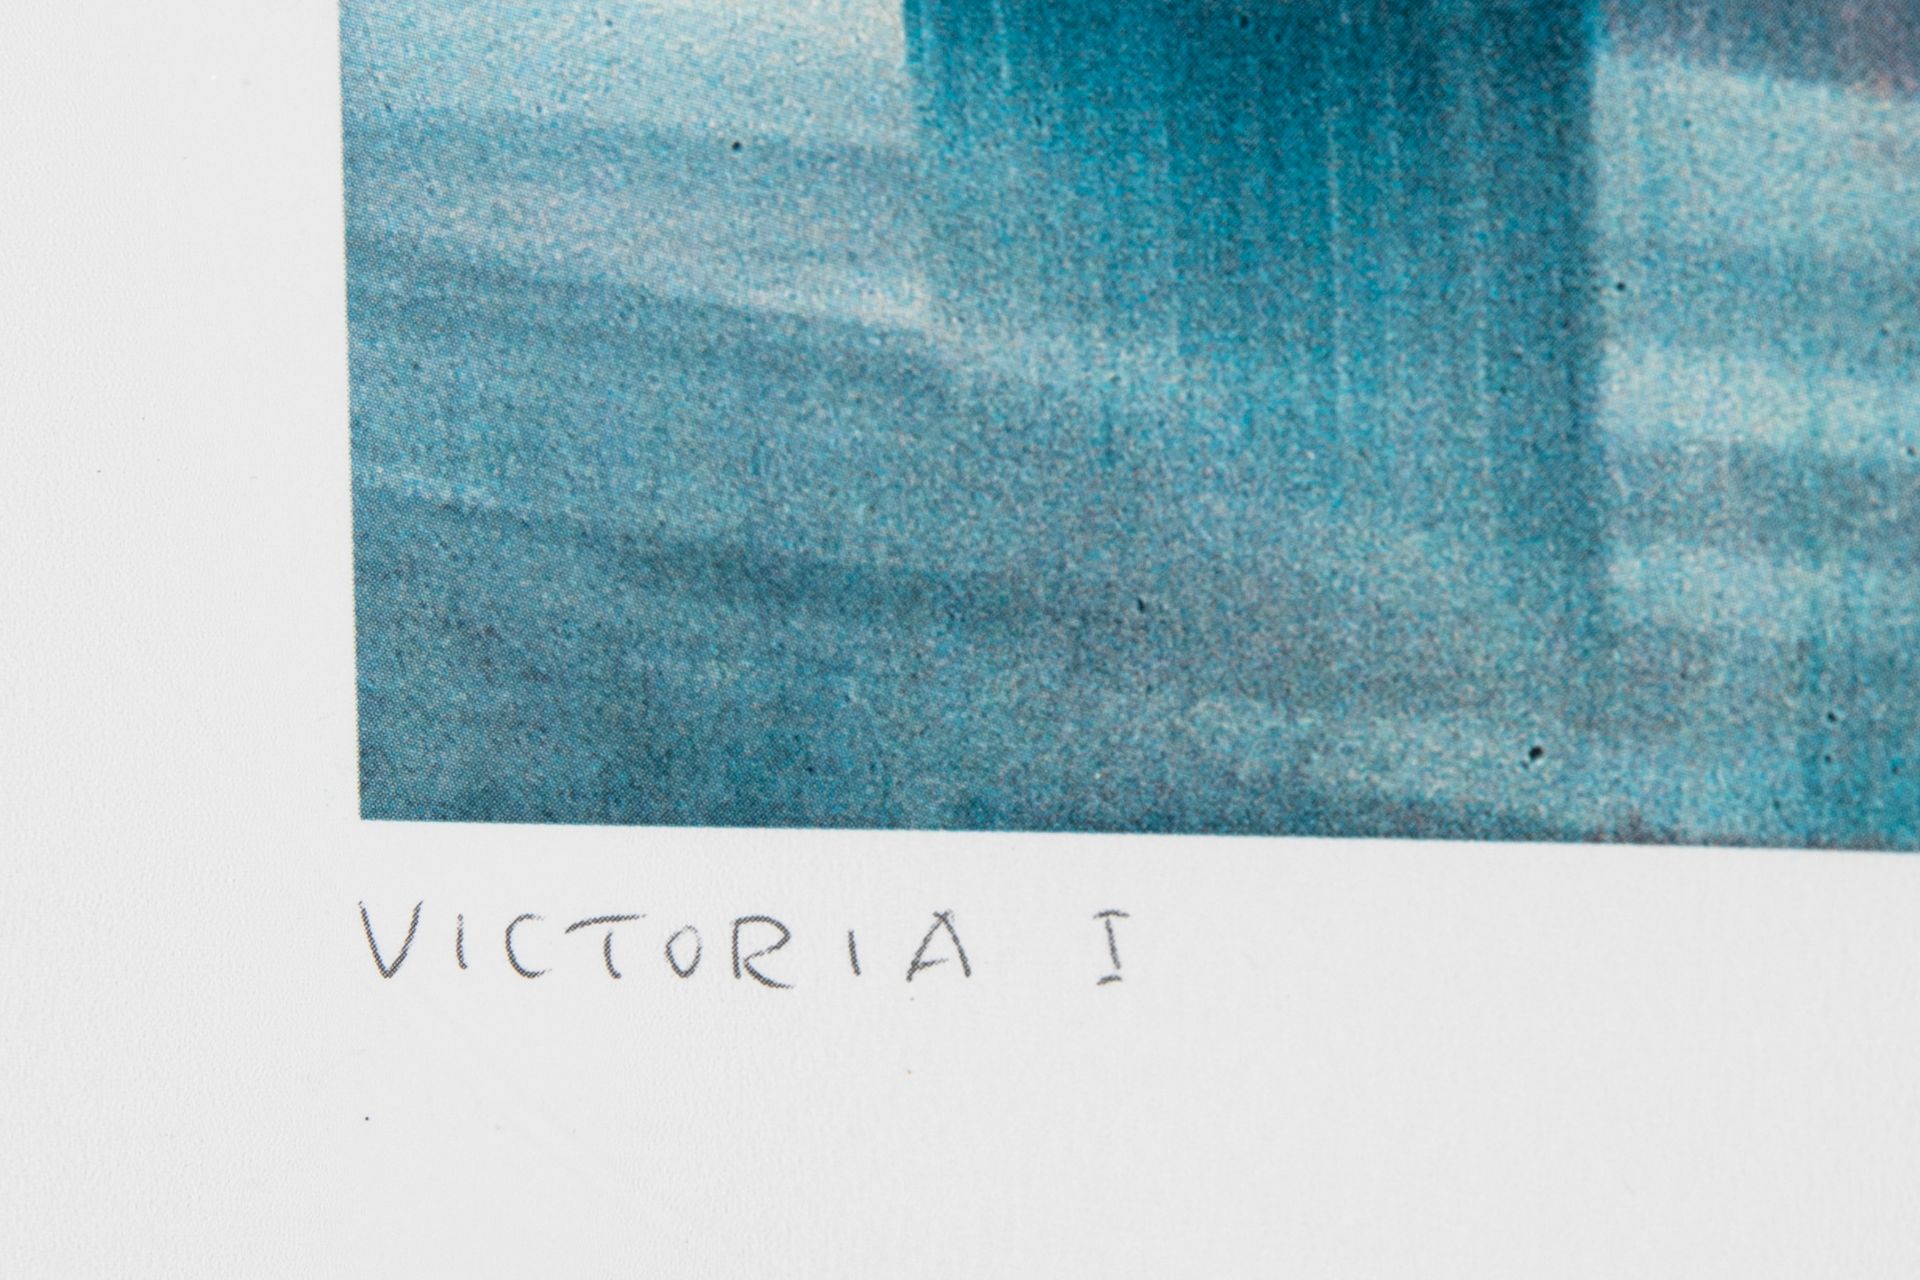 Lot 313 Gerhard Richter*, Victoria I, 2003 - Bild 3 aus 6